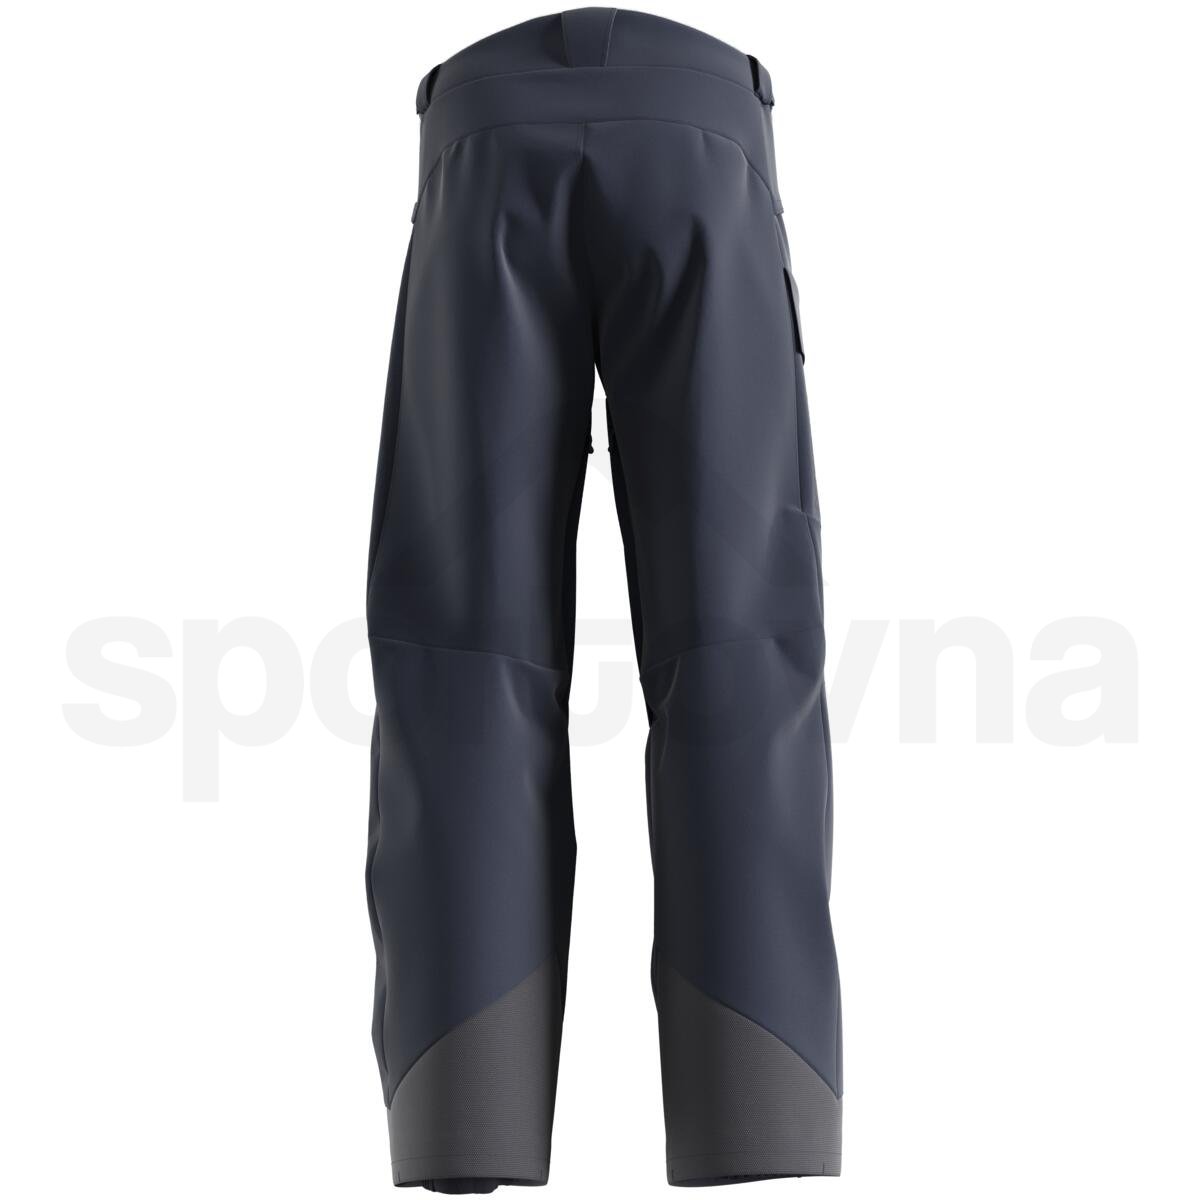 Kalhoty Salomon Untracked Pant (prodloužená délka) M - tmavě modrá